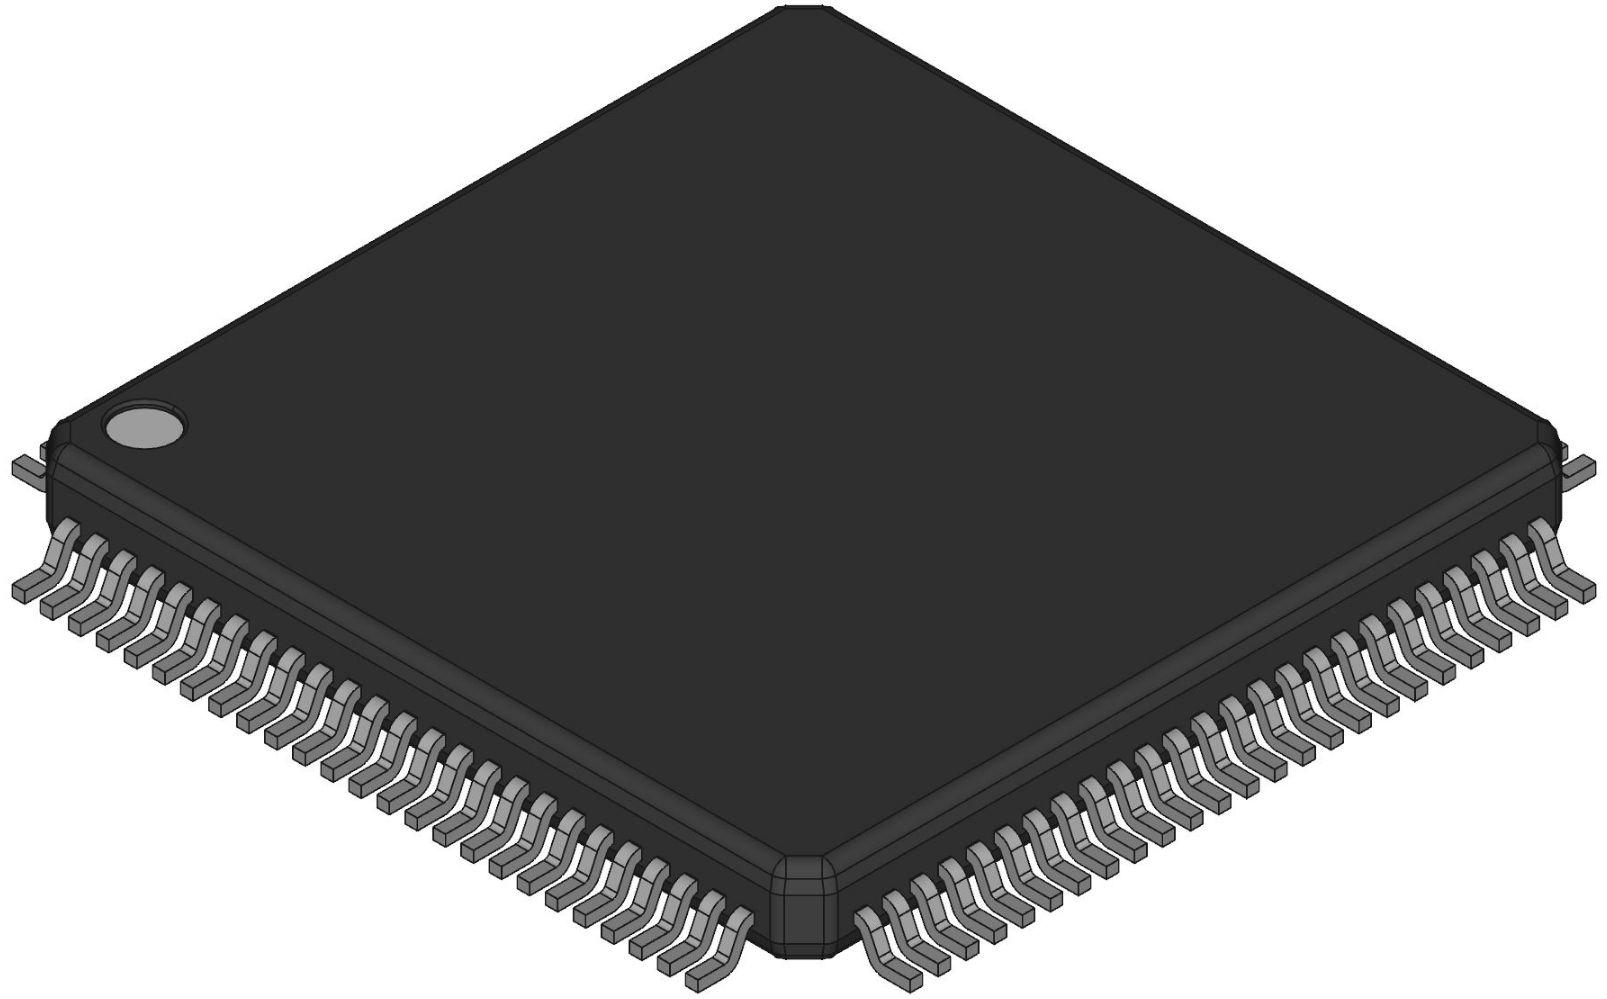 SPC560B50L3B4E0X 微控制器 全新原装 电子元器件市场 微处理器/微控制器/单片机 原图主图